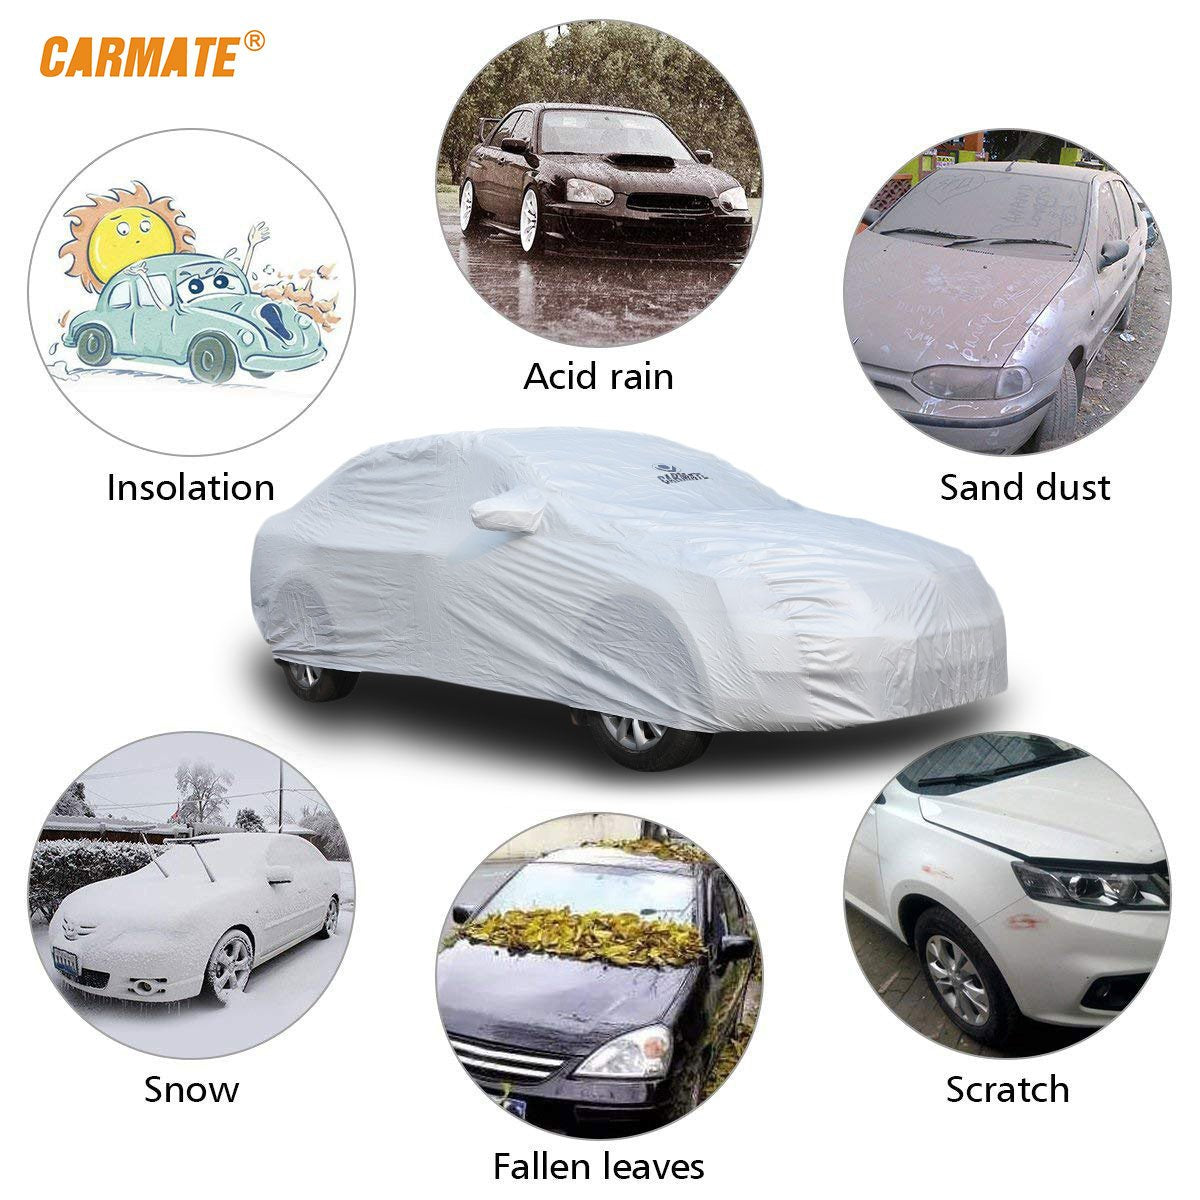 Carmate Premium Car Body Cover Silver Matty (Silver) for  Maruti - Ertiga - CARMATE®